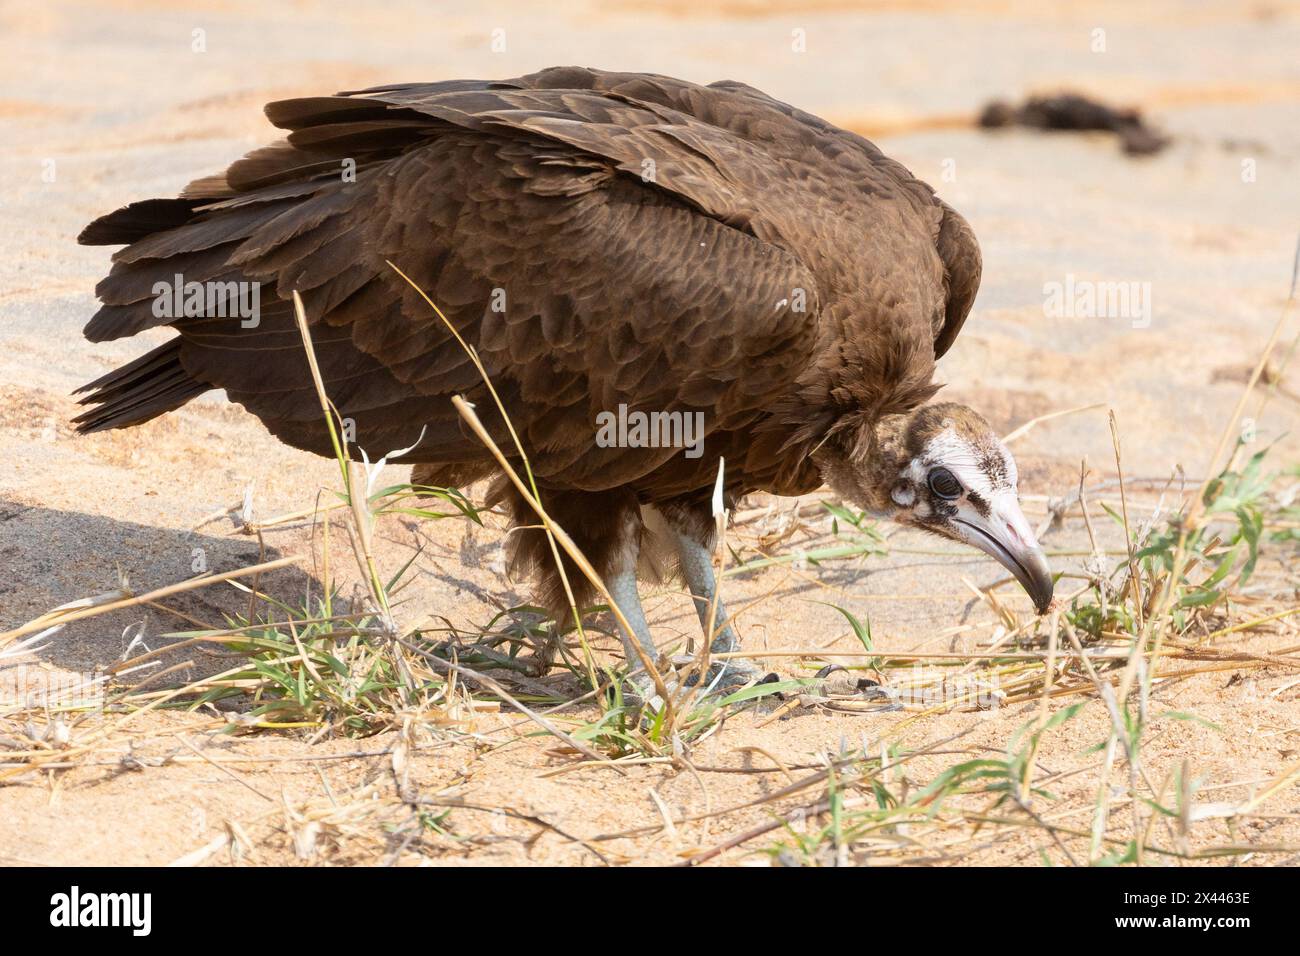 Vulture à capuche (Necrosyrtes monachus) juvénile à la recherche de déchets à a Kill, parc national Kruger, Afrique du Sud. Considéré en danger critique Banque D'Images